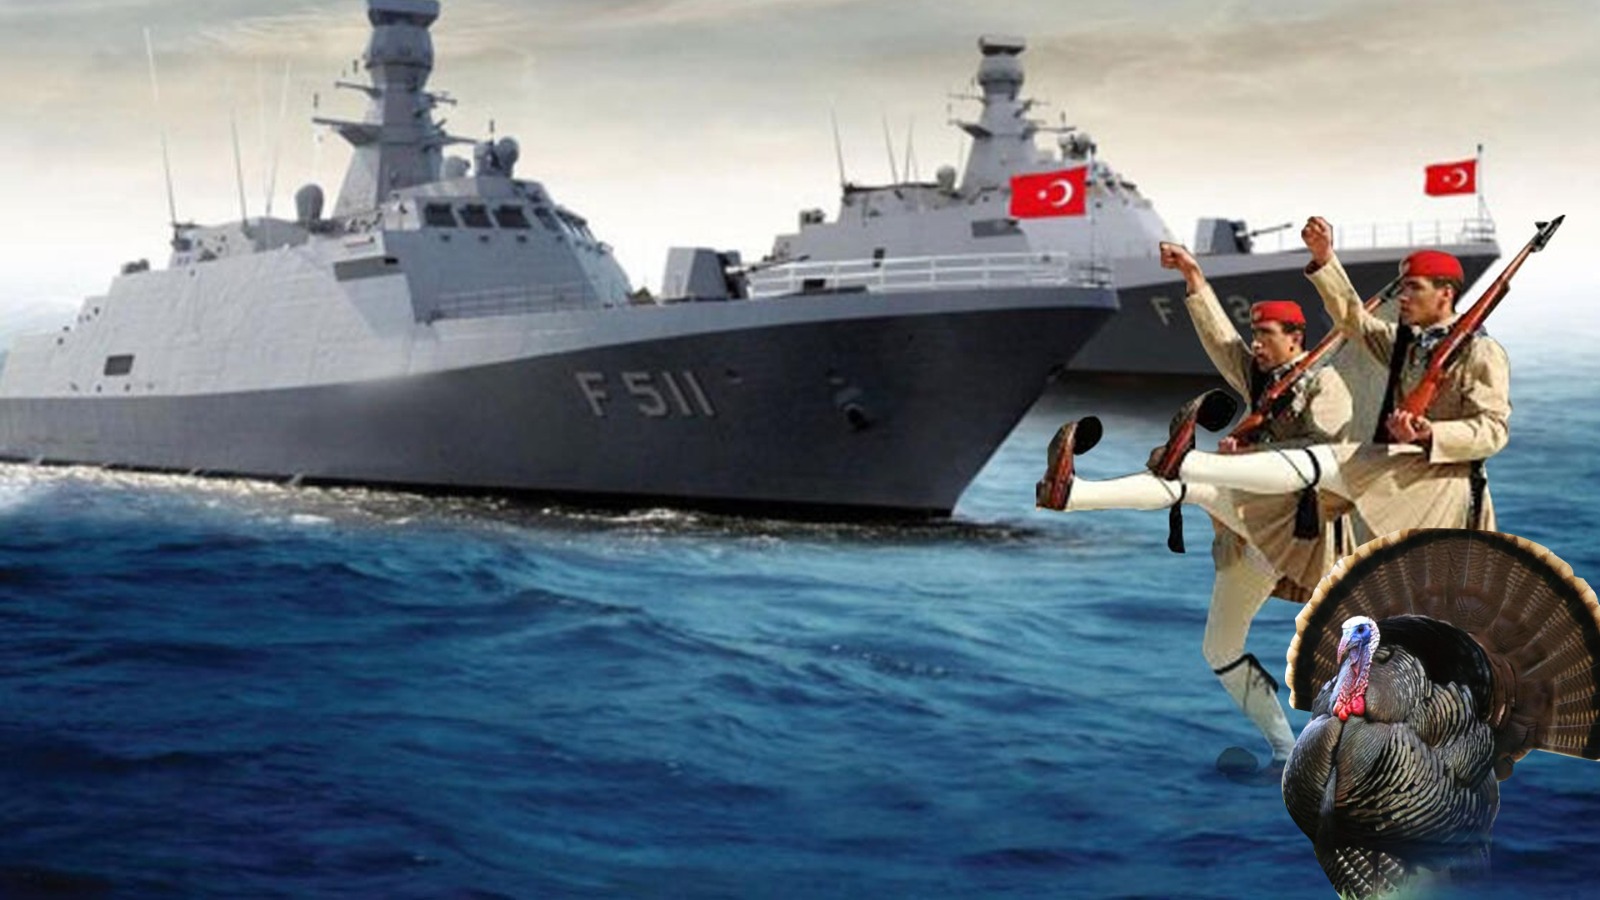 Yunan jetleri Türk gemisine yaklaştı!